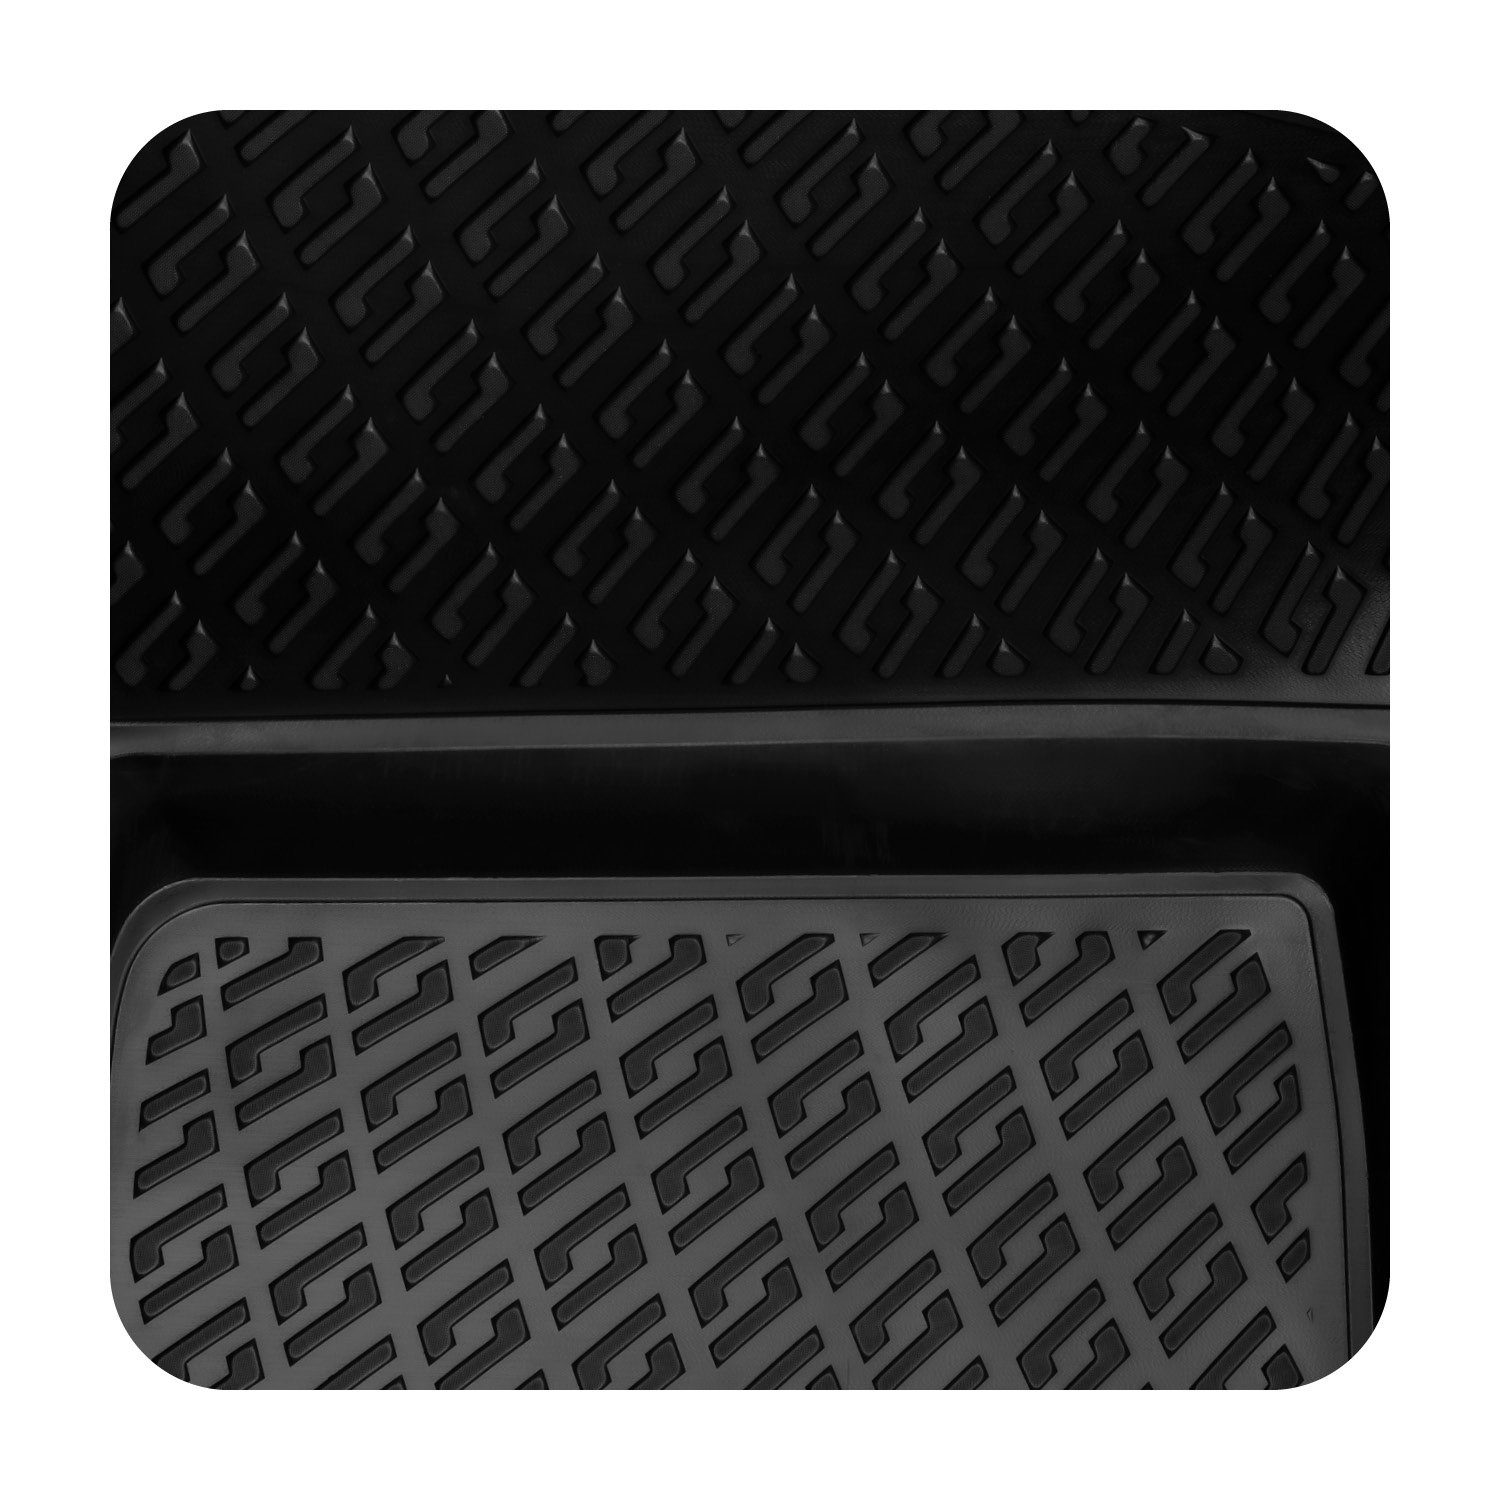 BOTC Universal-Fußmatten Fußstütze - Fußstütze Schreibtisch - Geeignet für  Haus oder Büro, ergonomie - abwaschbar - schwarz